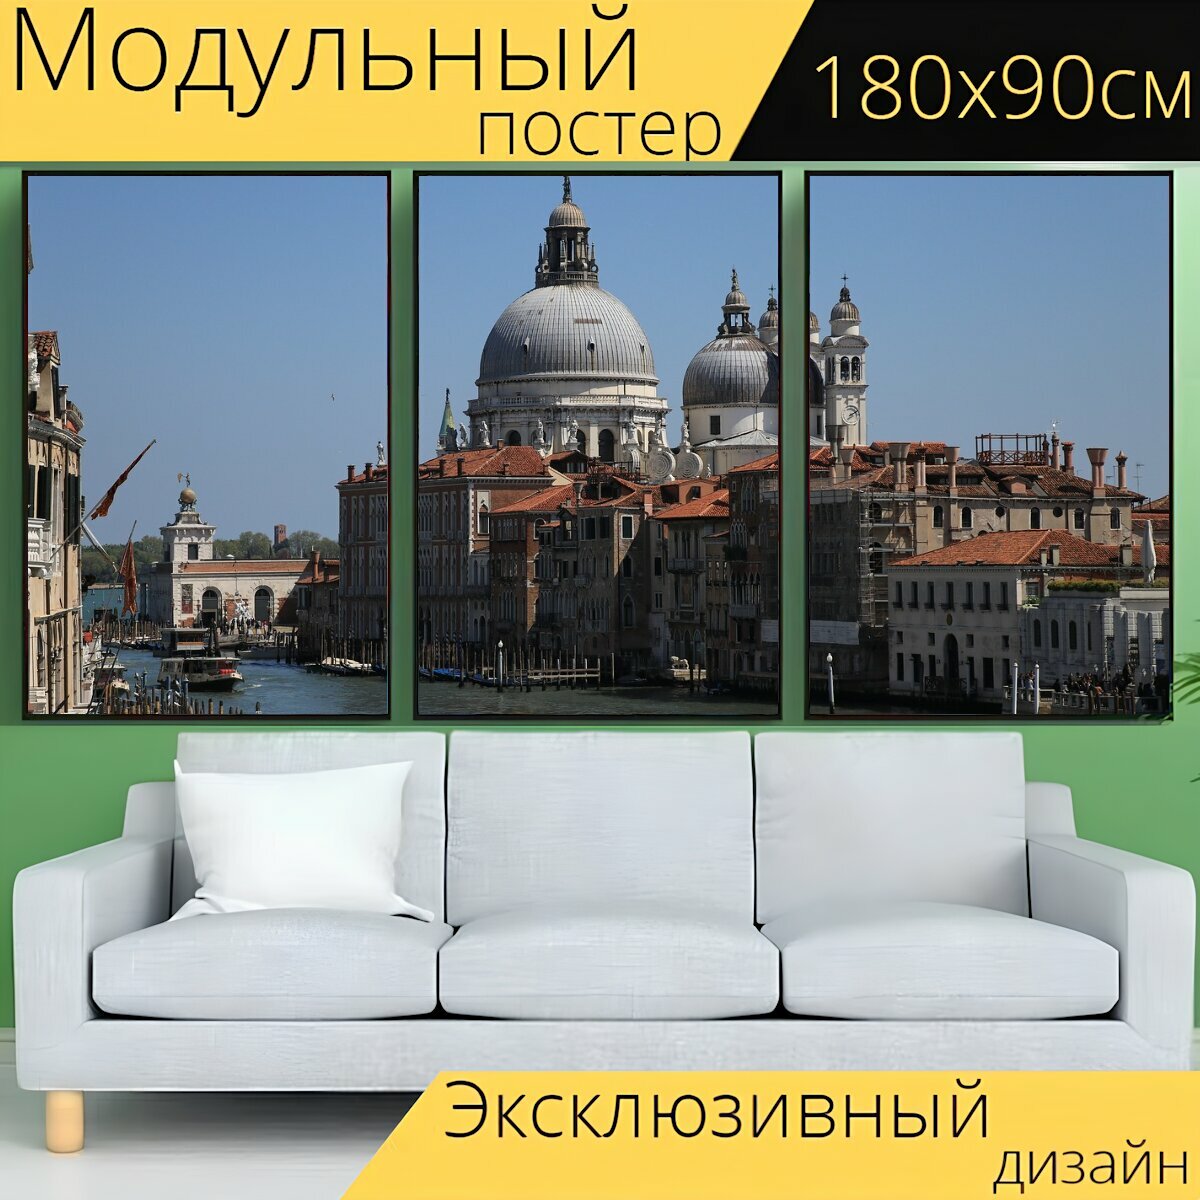 Модульный постер "Венеция, италия, плавучий город" 180 x 90 см. для интерьера